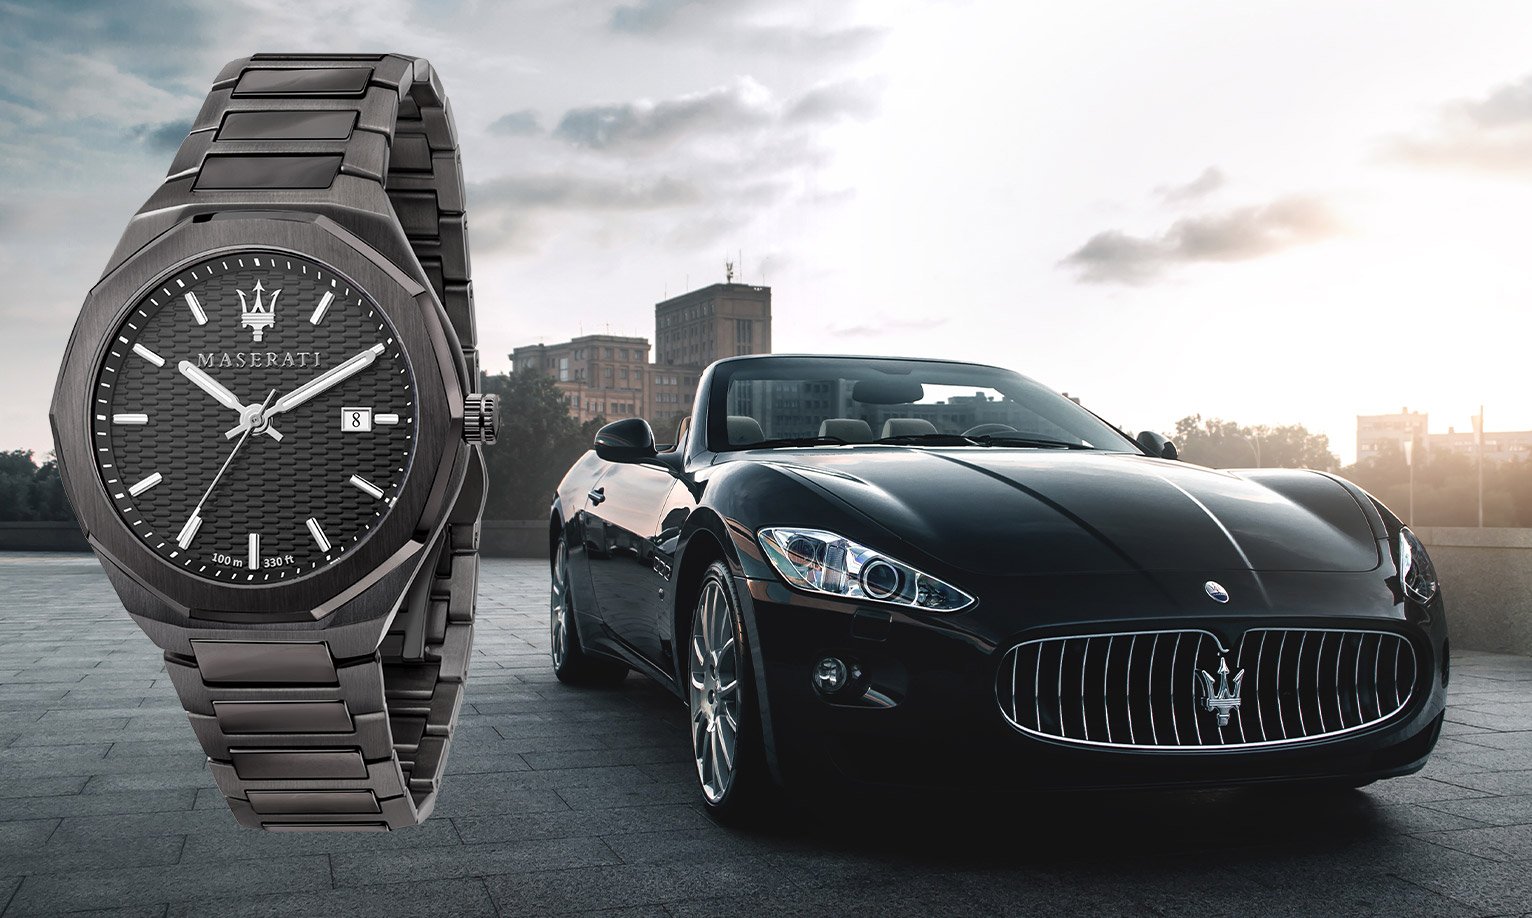 Amazon.com: Maserati Men's Successo R8871621014 Black Silicone Quartz  Fashion Watch : Maserati: Clothing, Shoes & Jewelry